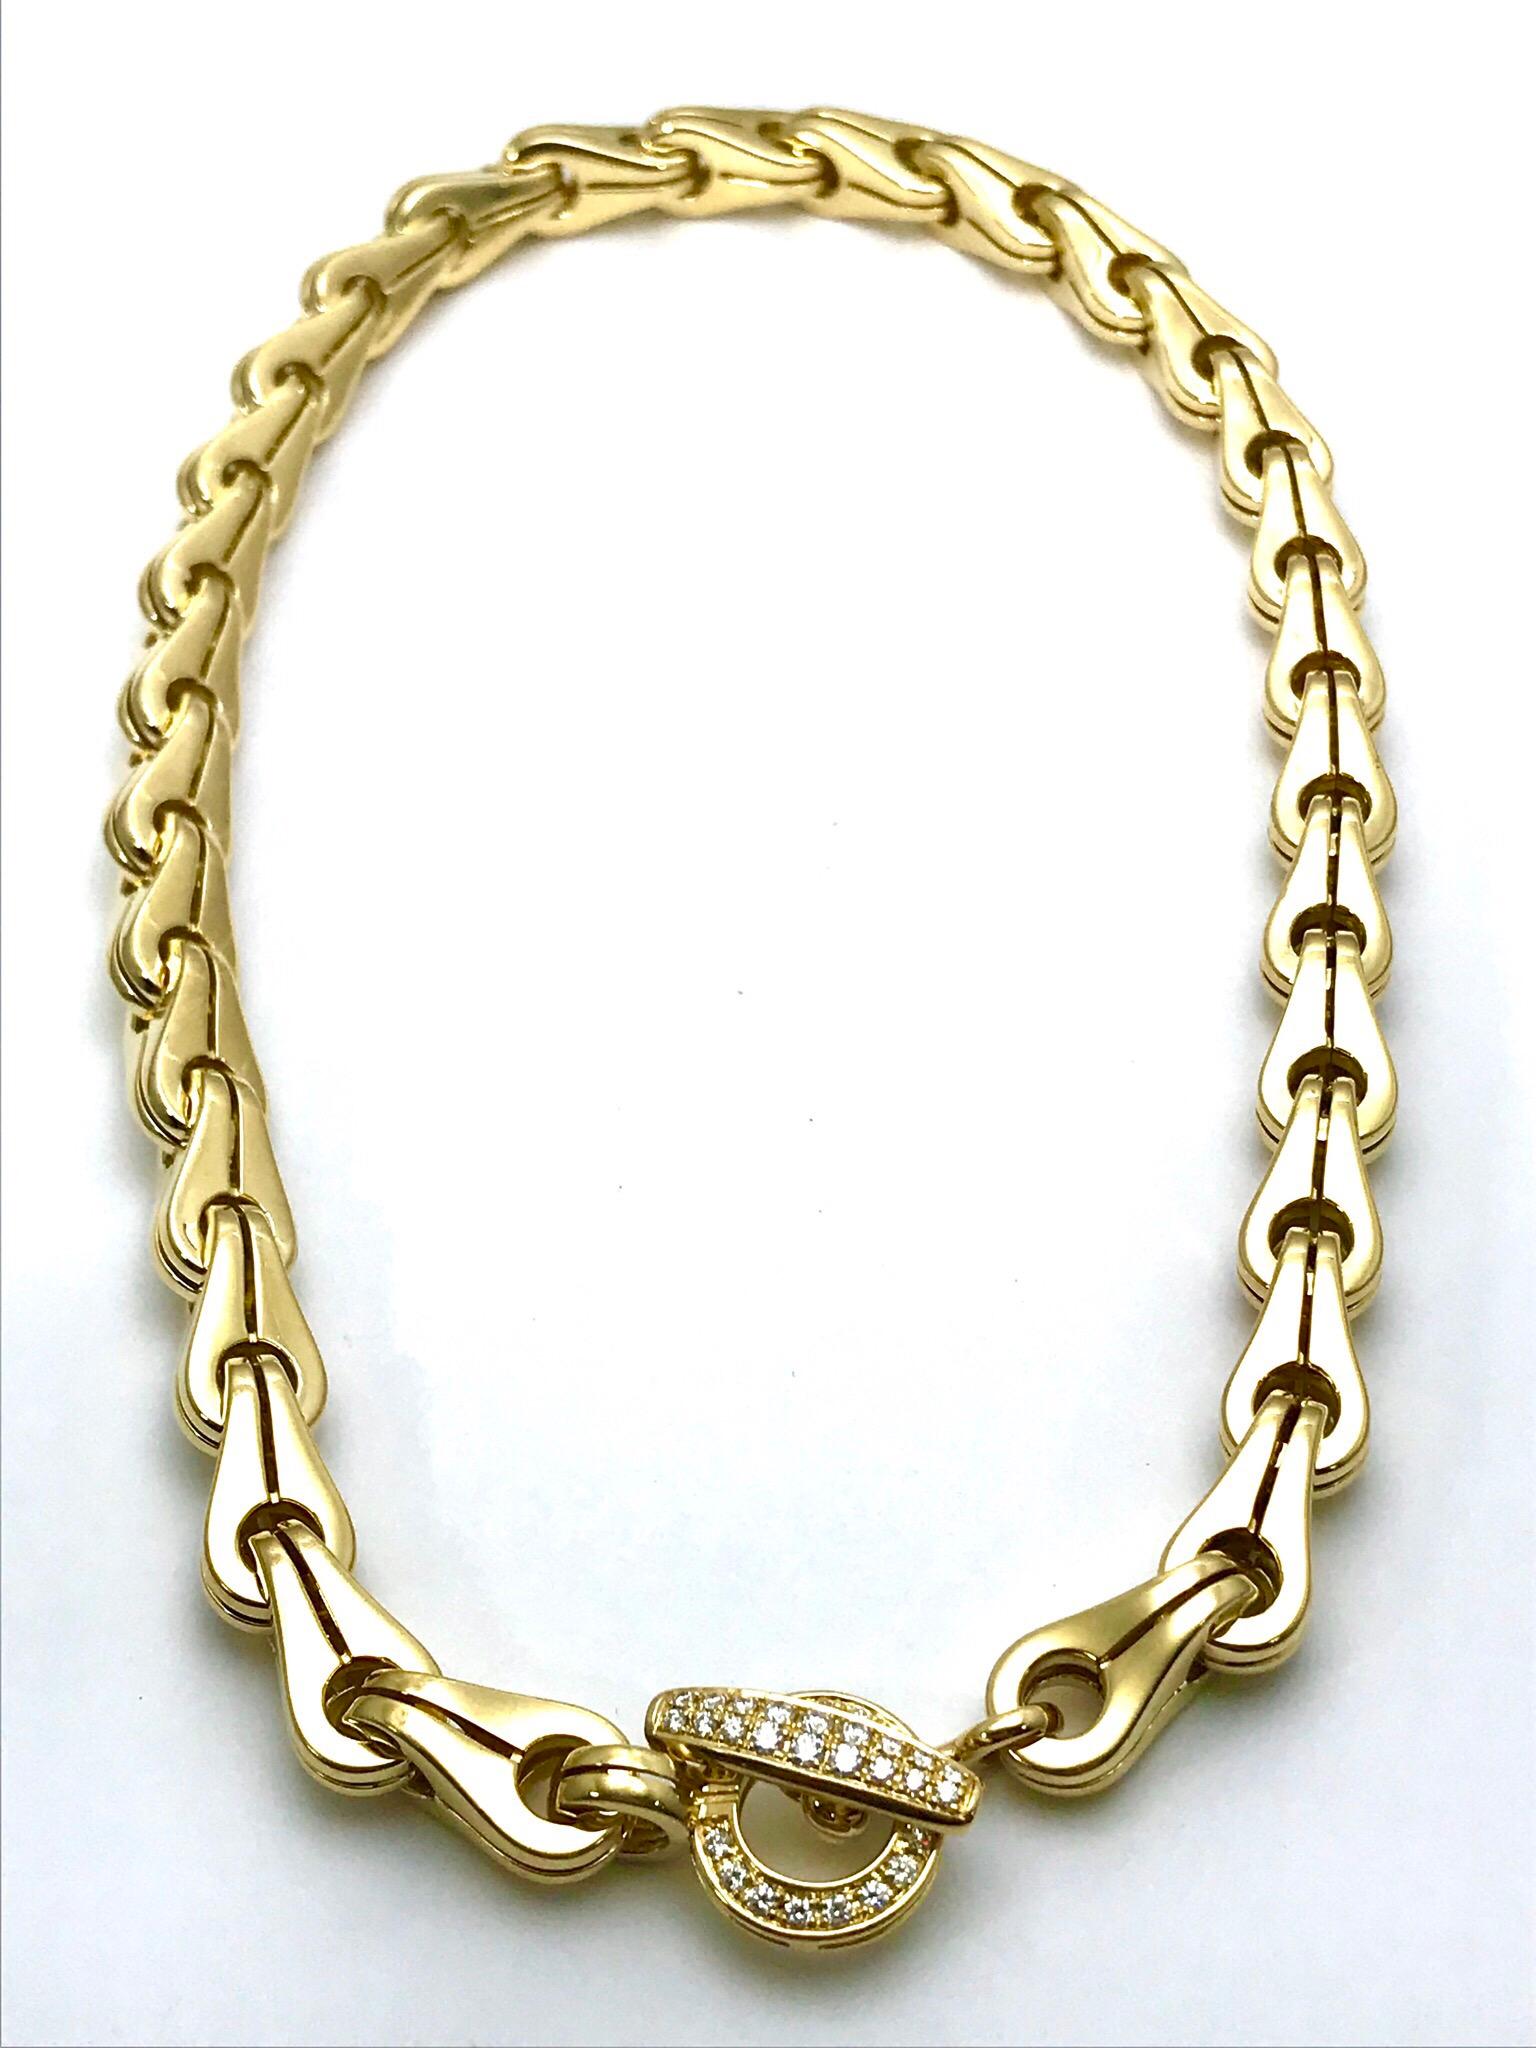 Dies ist ein fabelhaftes Di Modolo Tempia Diamant und 18 Karat Gelbgold Halskette.  Der Knebelverschluss der Halskette hat 34 runde Brillanten mit einem Gesamtgewicht von 0,52 Karat.  Alle Glieder sind aus massivem 18-karätigem Gelbgold und